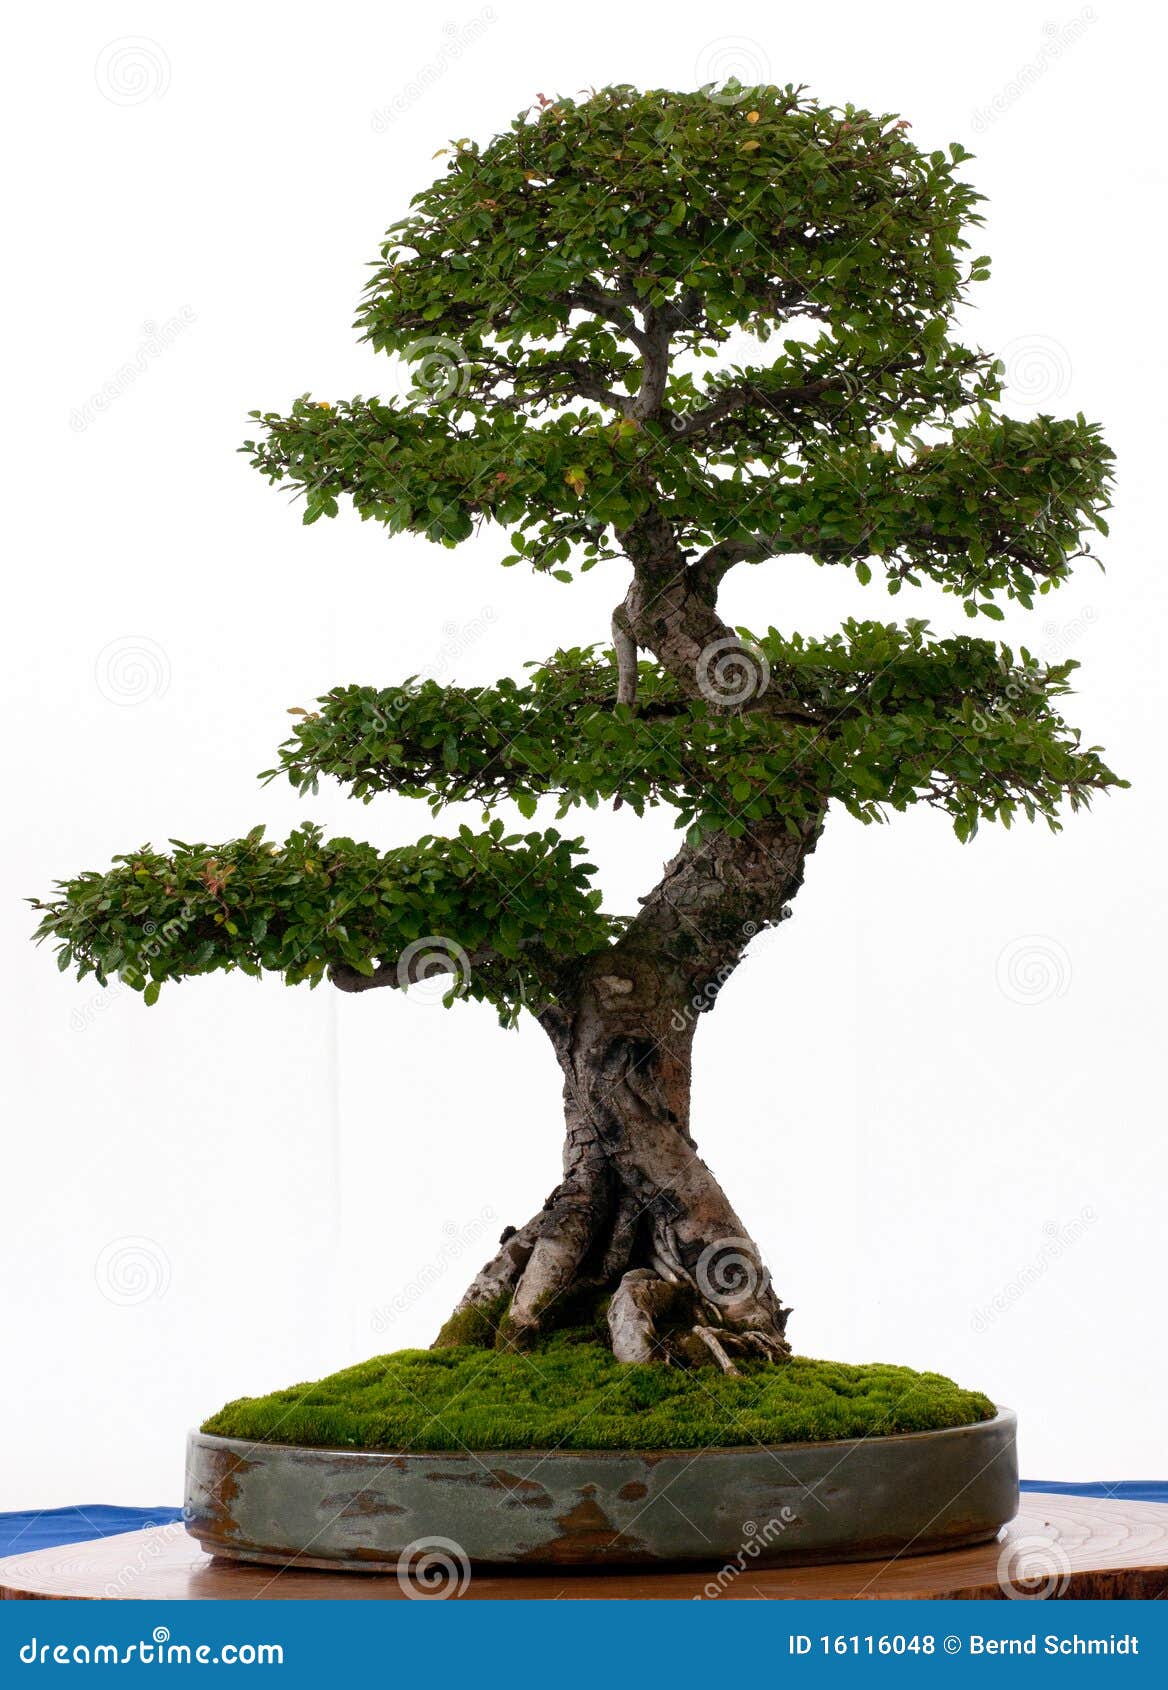 chinese-elm-as-bonsai-16116048.jpg